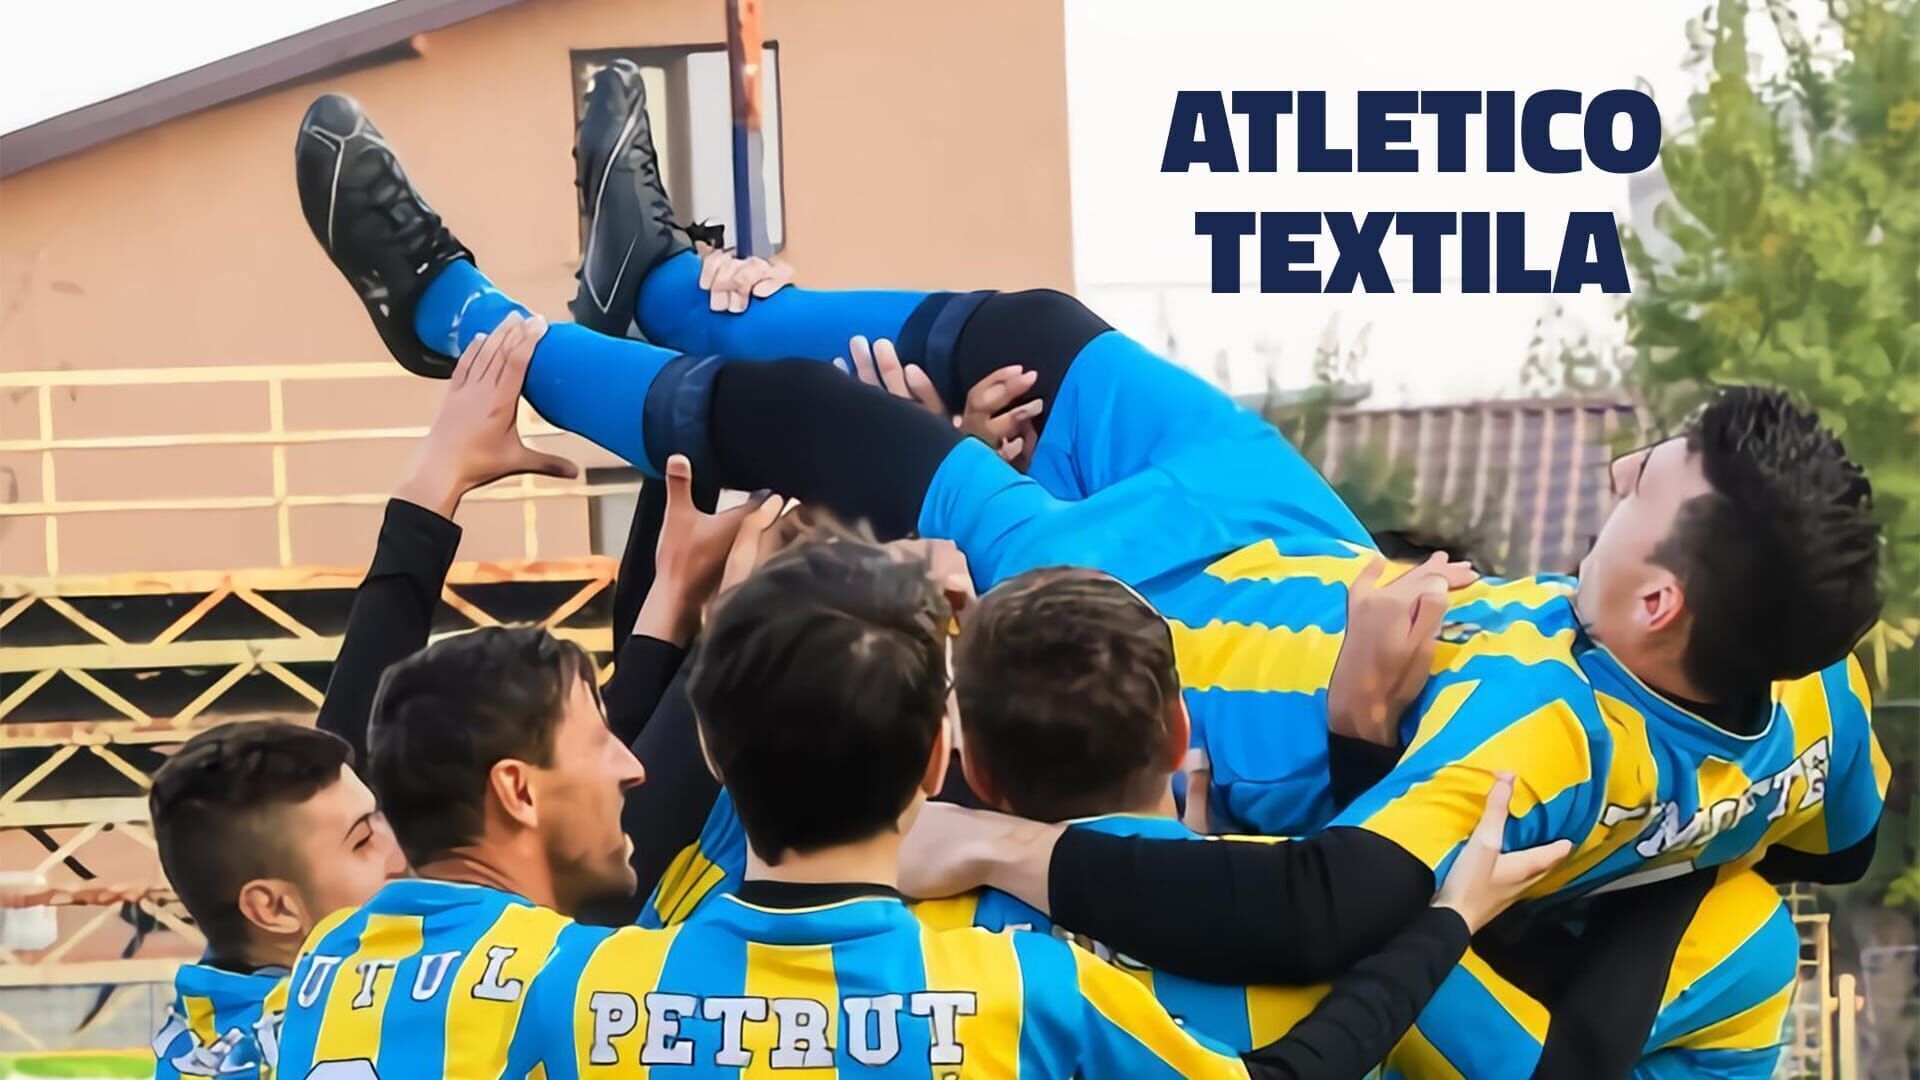 Atletico Textila - Arma secretă